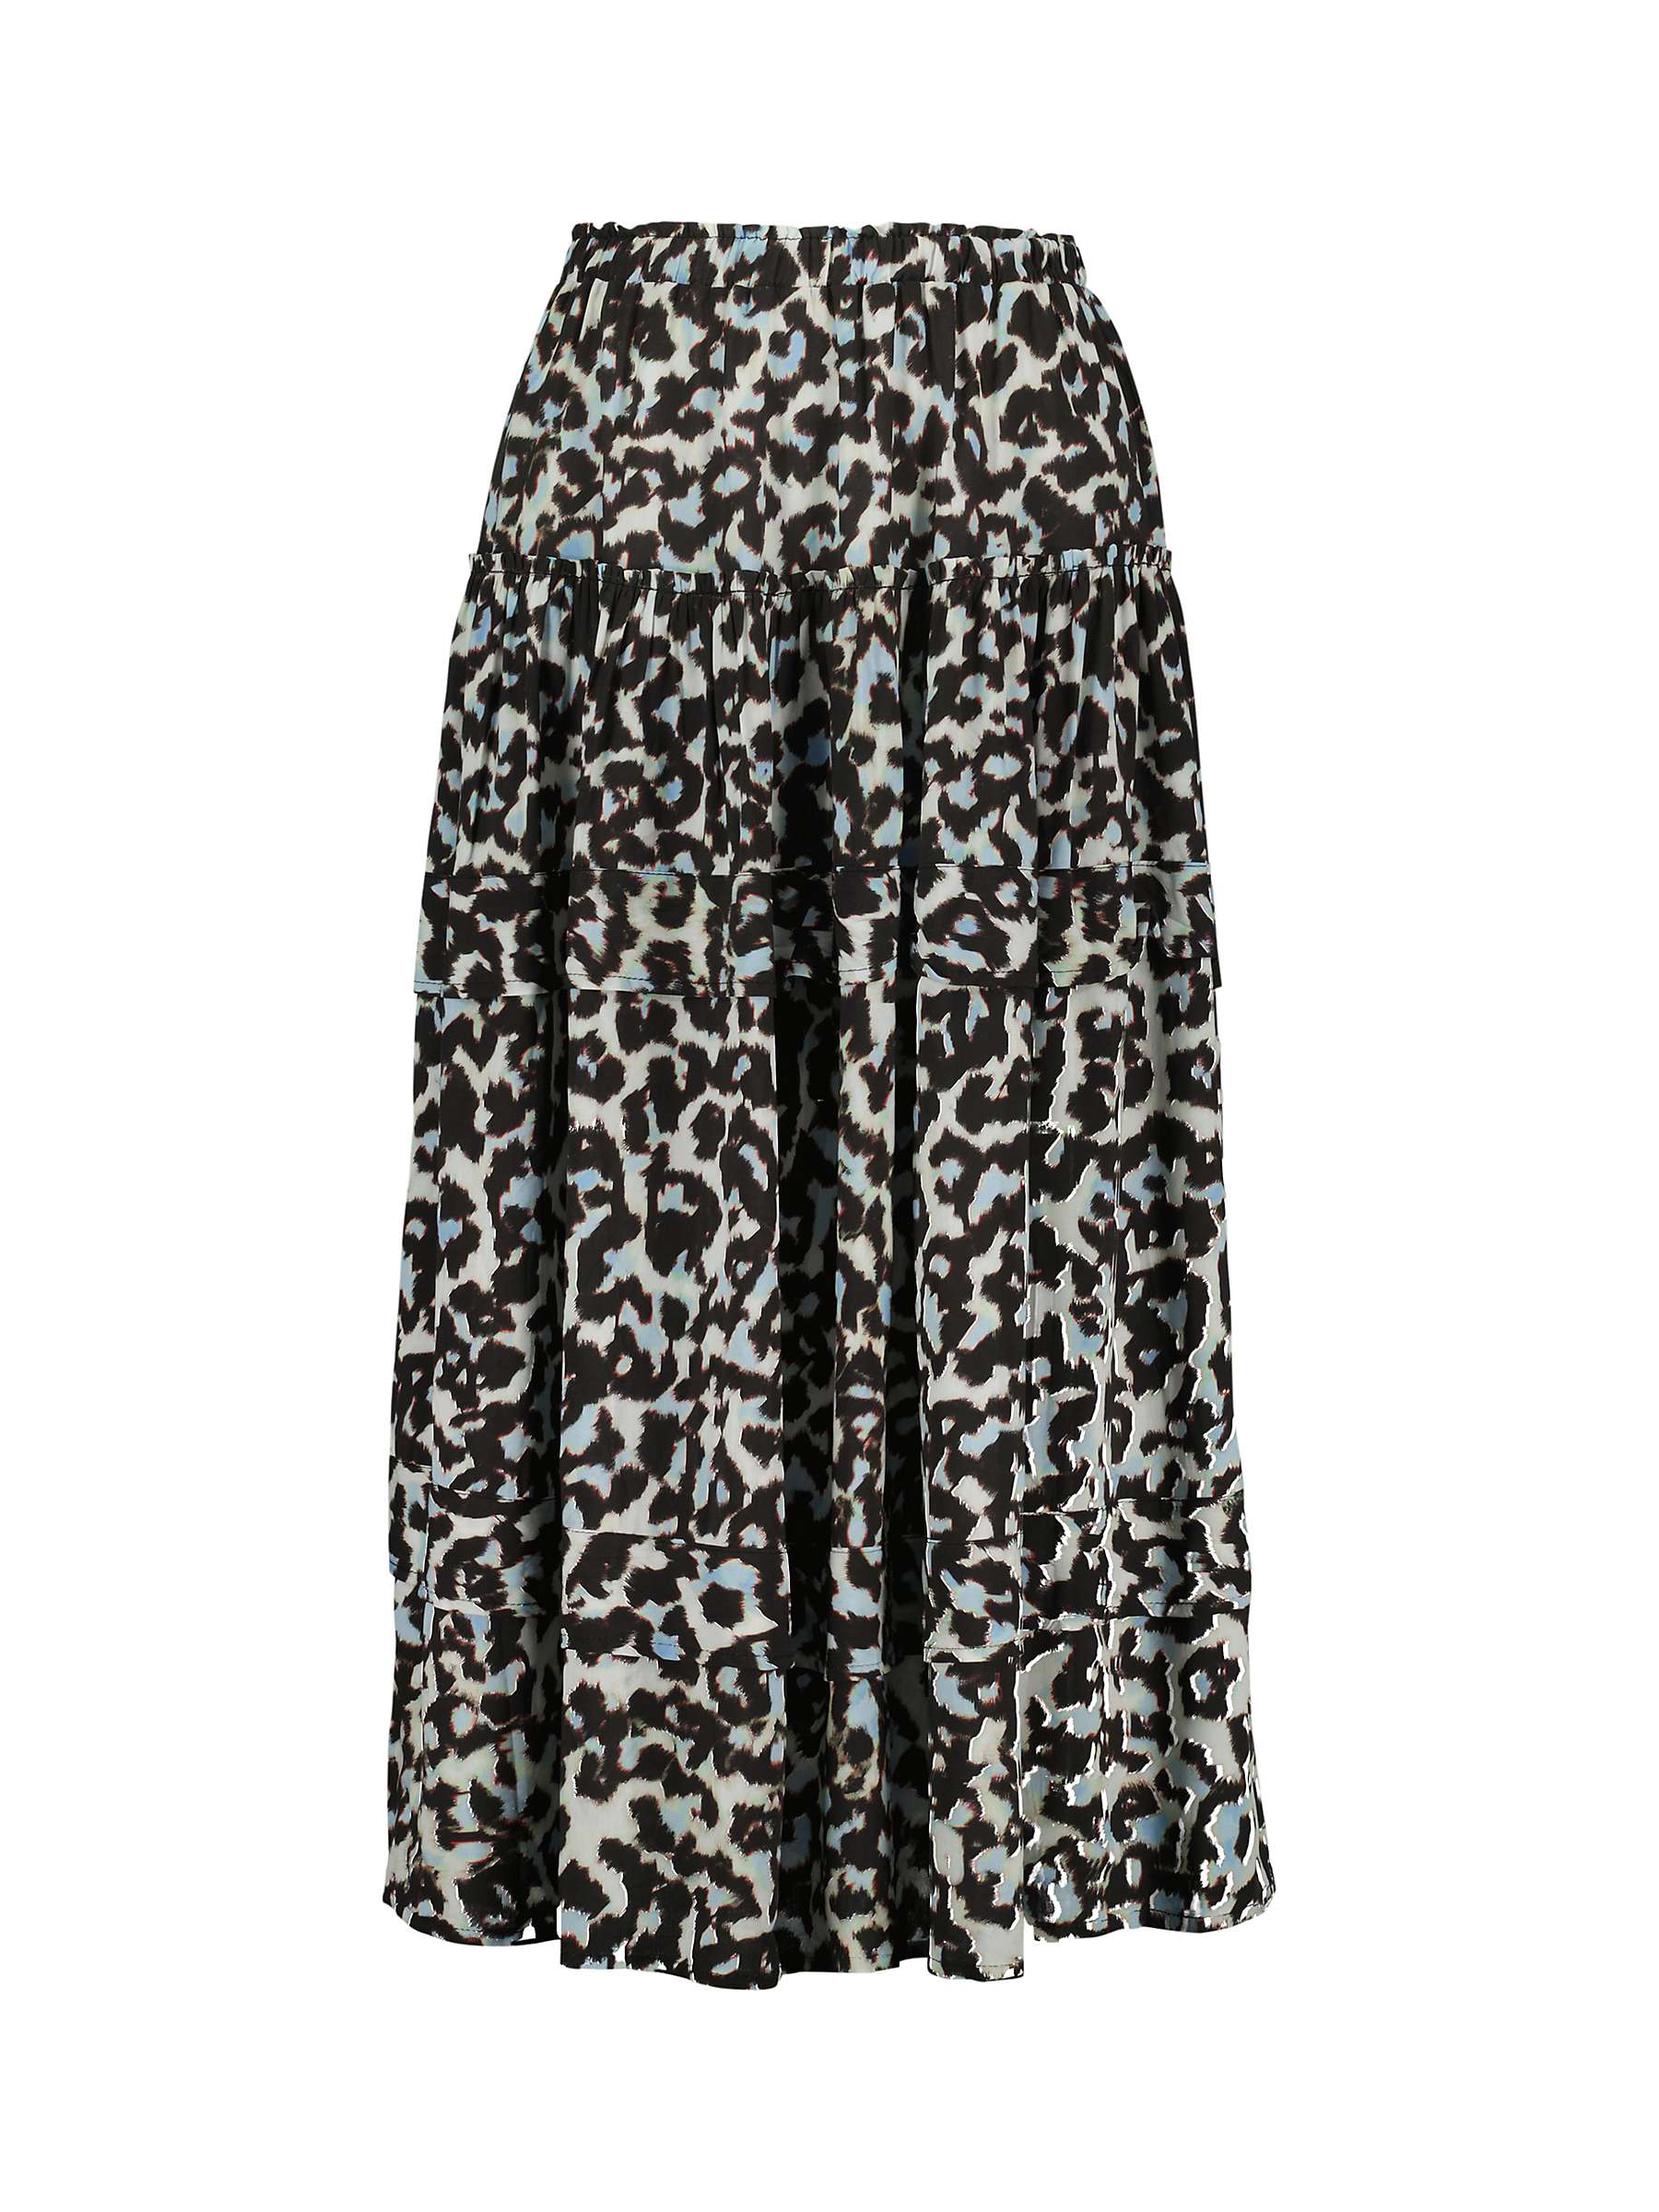 Buy Baukjen Stefania Animal Print Midi Skirt, Soft White Snow Online at johnlewis.com